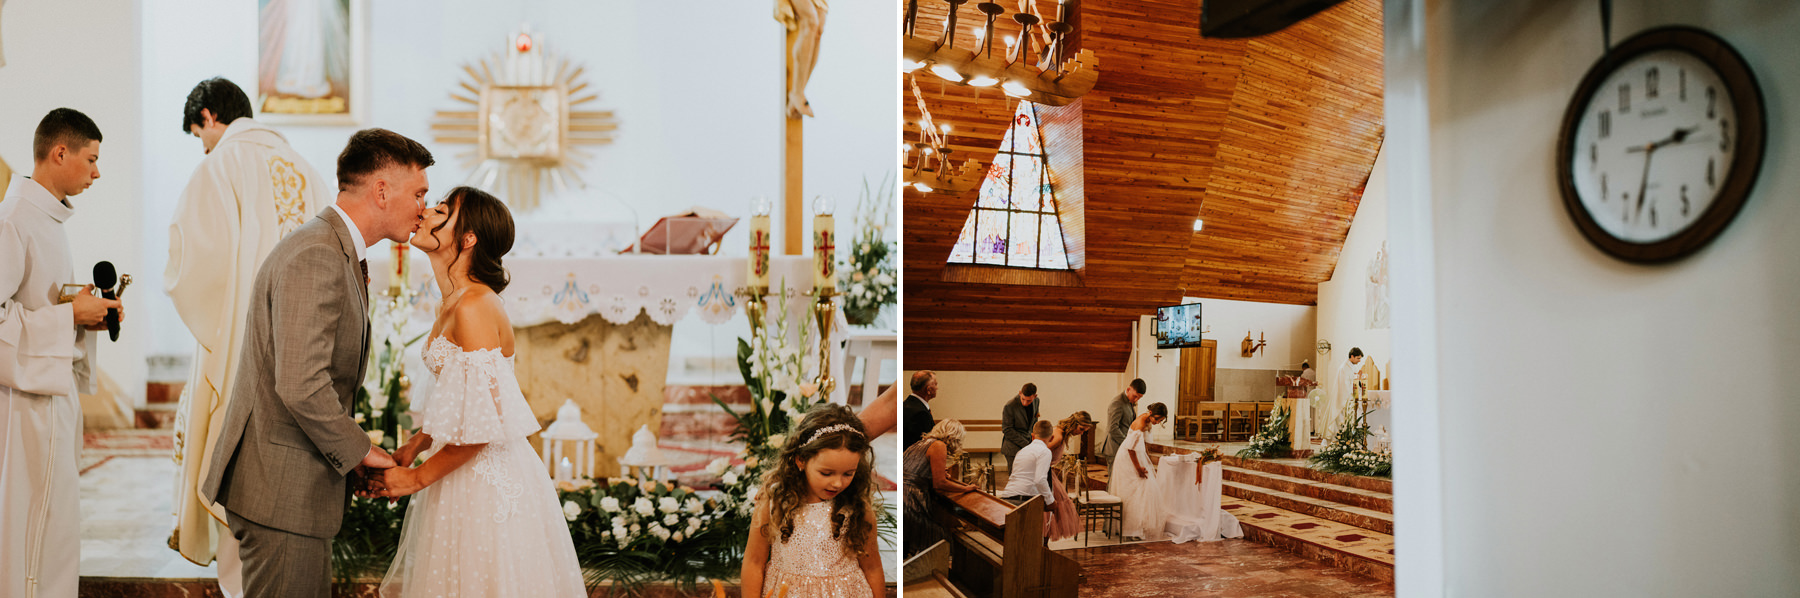 242 willa poprad wesele rytro fotograf wedding photographer karol nycz krakow